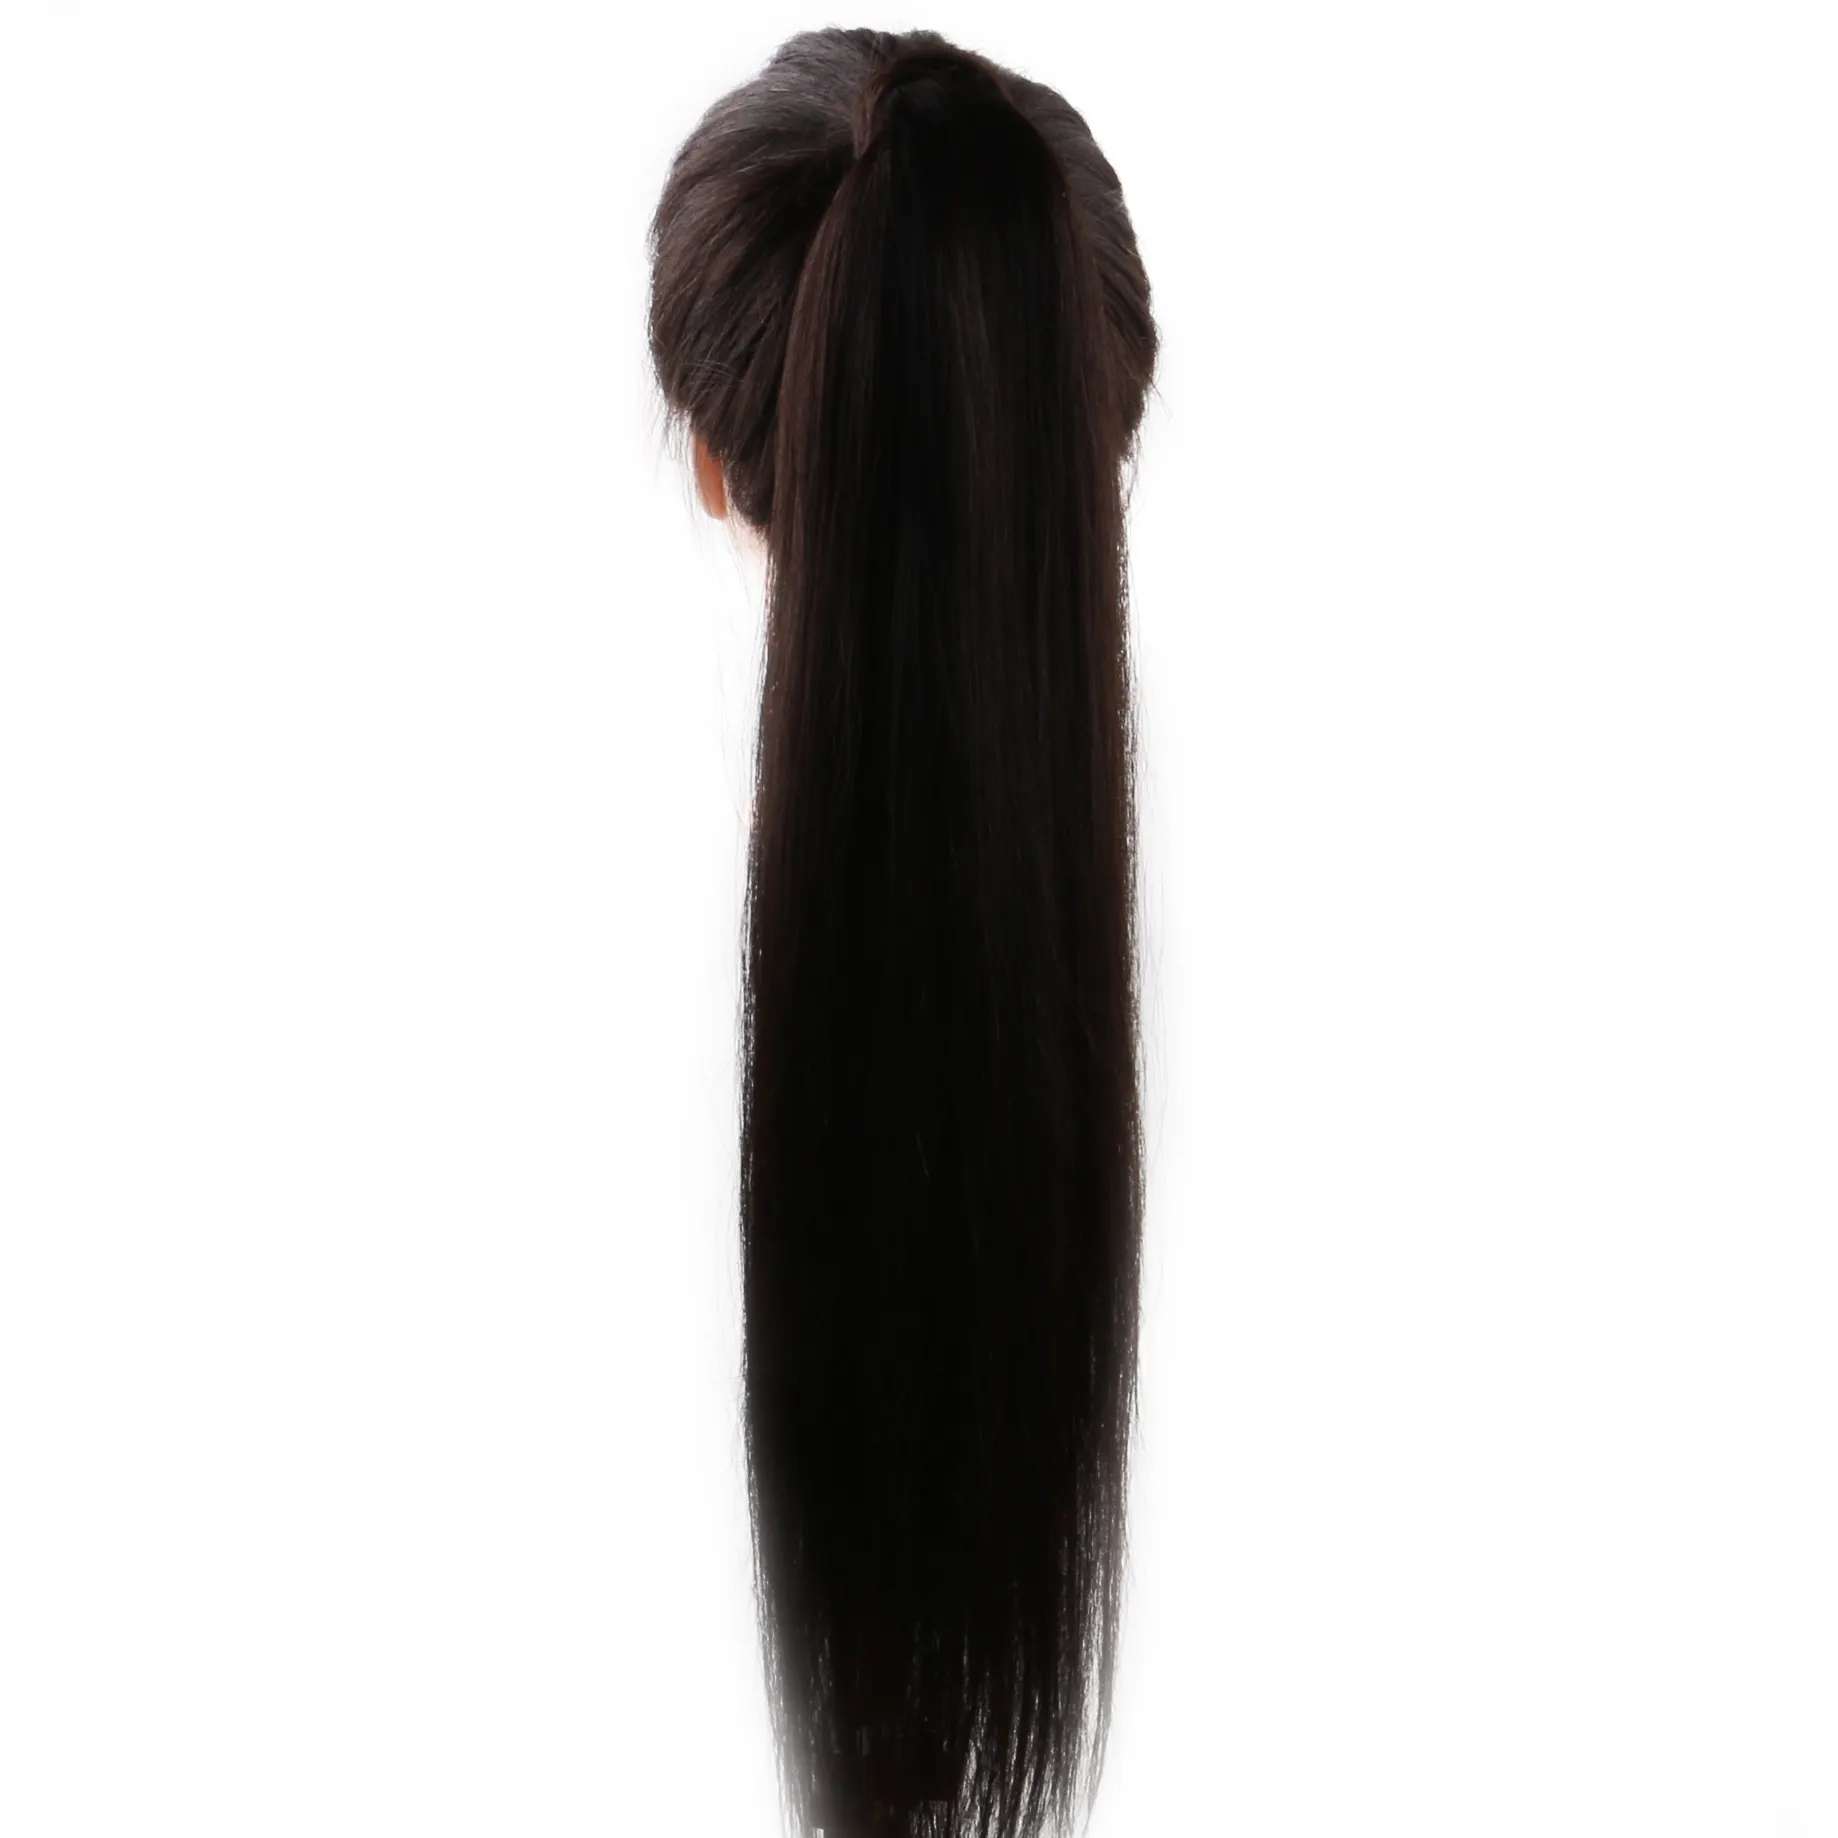 Aplique de cabelo natural, envio rápido, 22 polegadas, rabo de cavalo 100% humano, envoltório em torno de extensões de rabo de cavalo para mulheres, uso em 1 peça